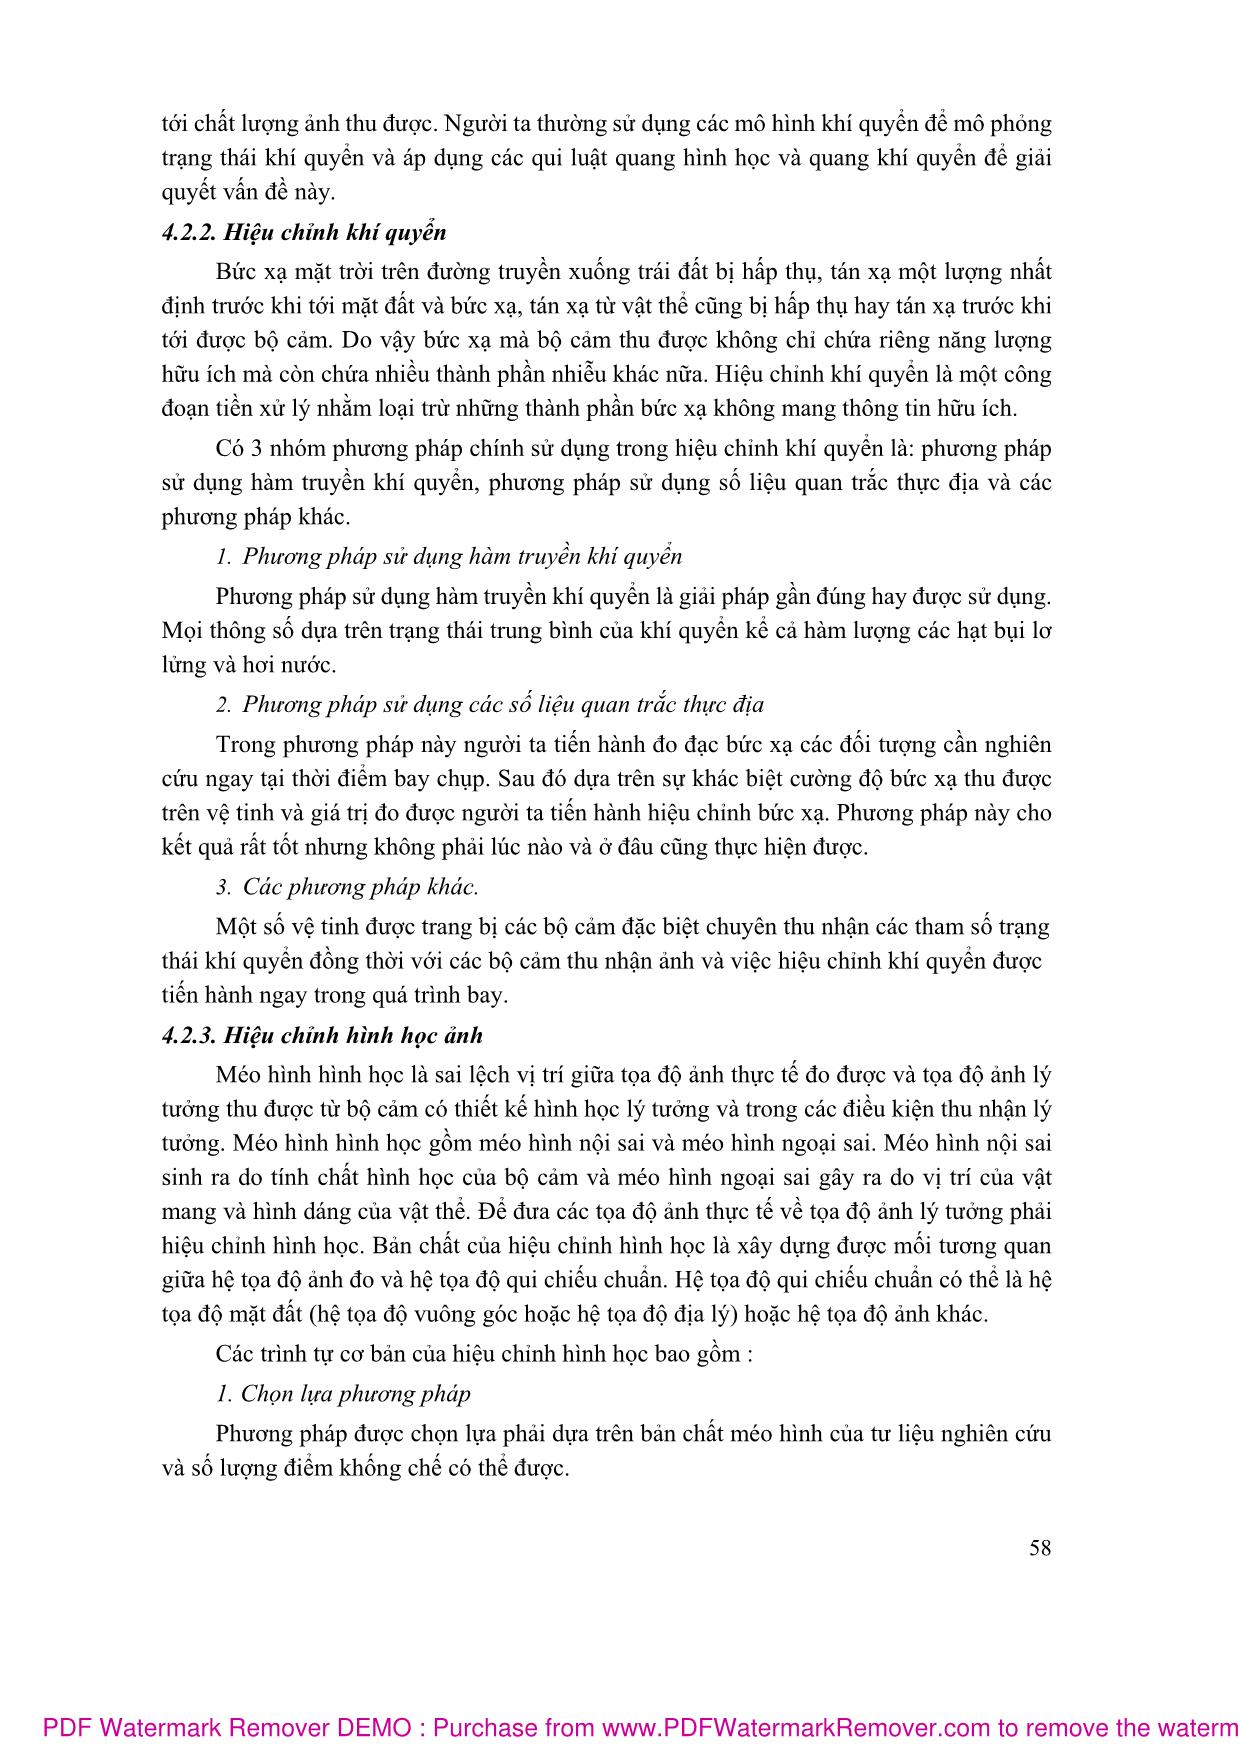 Bài giảng Viễn thám - Nguyễn Đình Tiến (Phần 2) trang 3